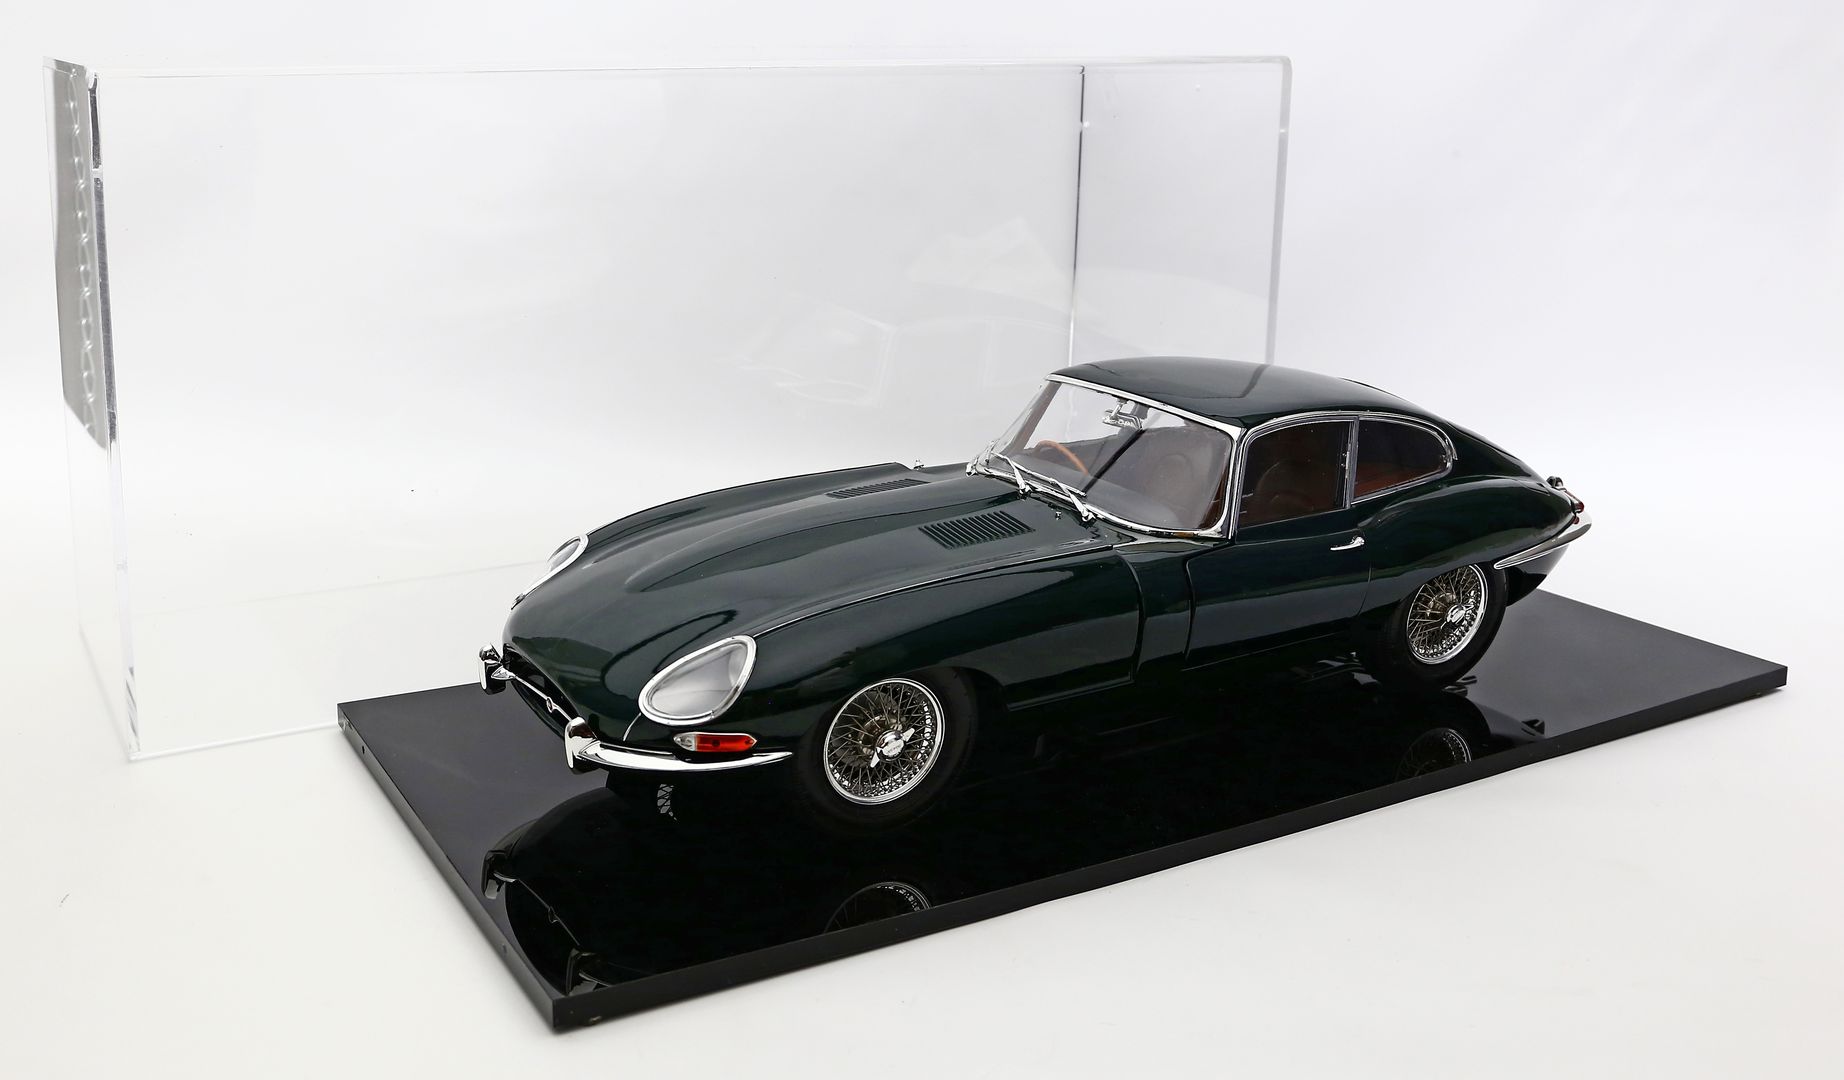 Modellauto "Jaguar", 1:8.